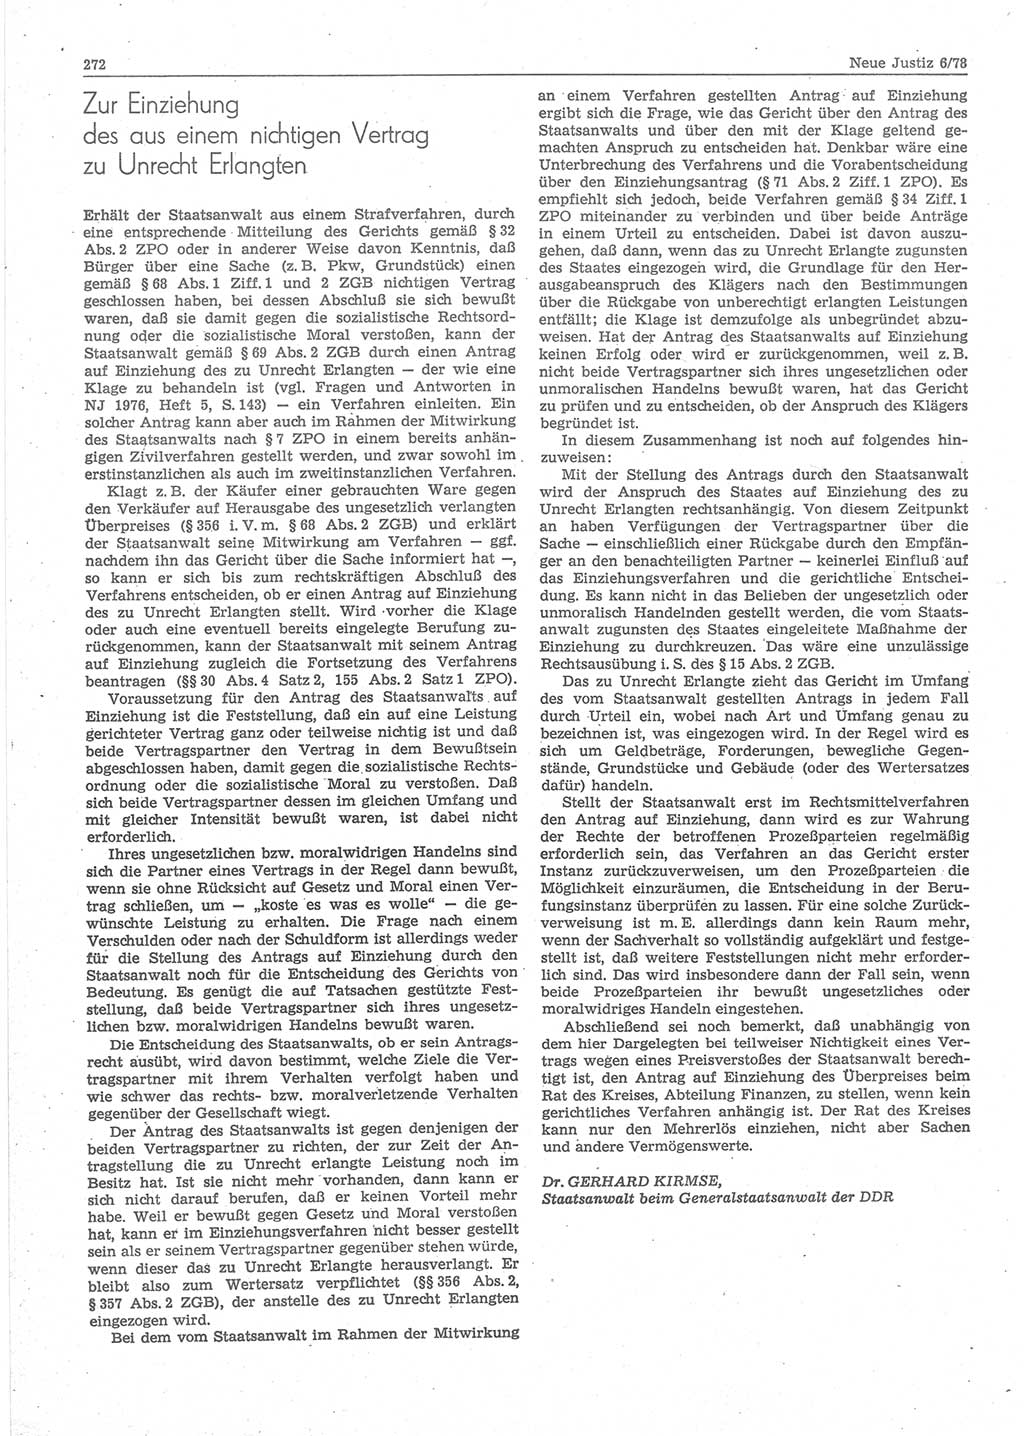 Neue Justiz (NJ), Zeitschrift für sozialistisches Recht und Gesetzlichkeit [Deutsche Demokratische Republik (DDR)], 32. Jahrgang 1978, Seite 272 (NJ DDR 1978, S. 272)